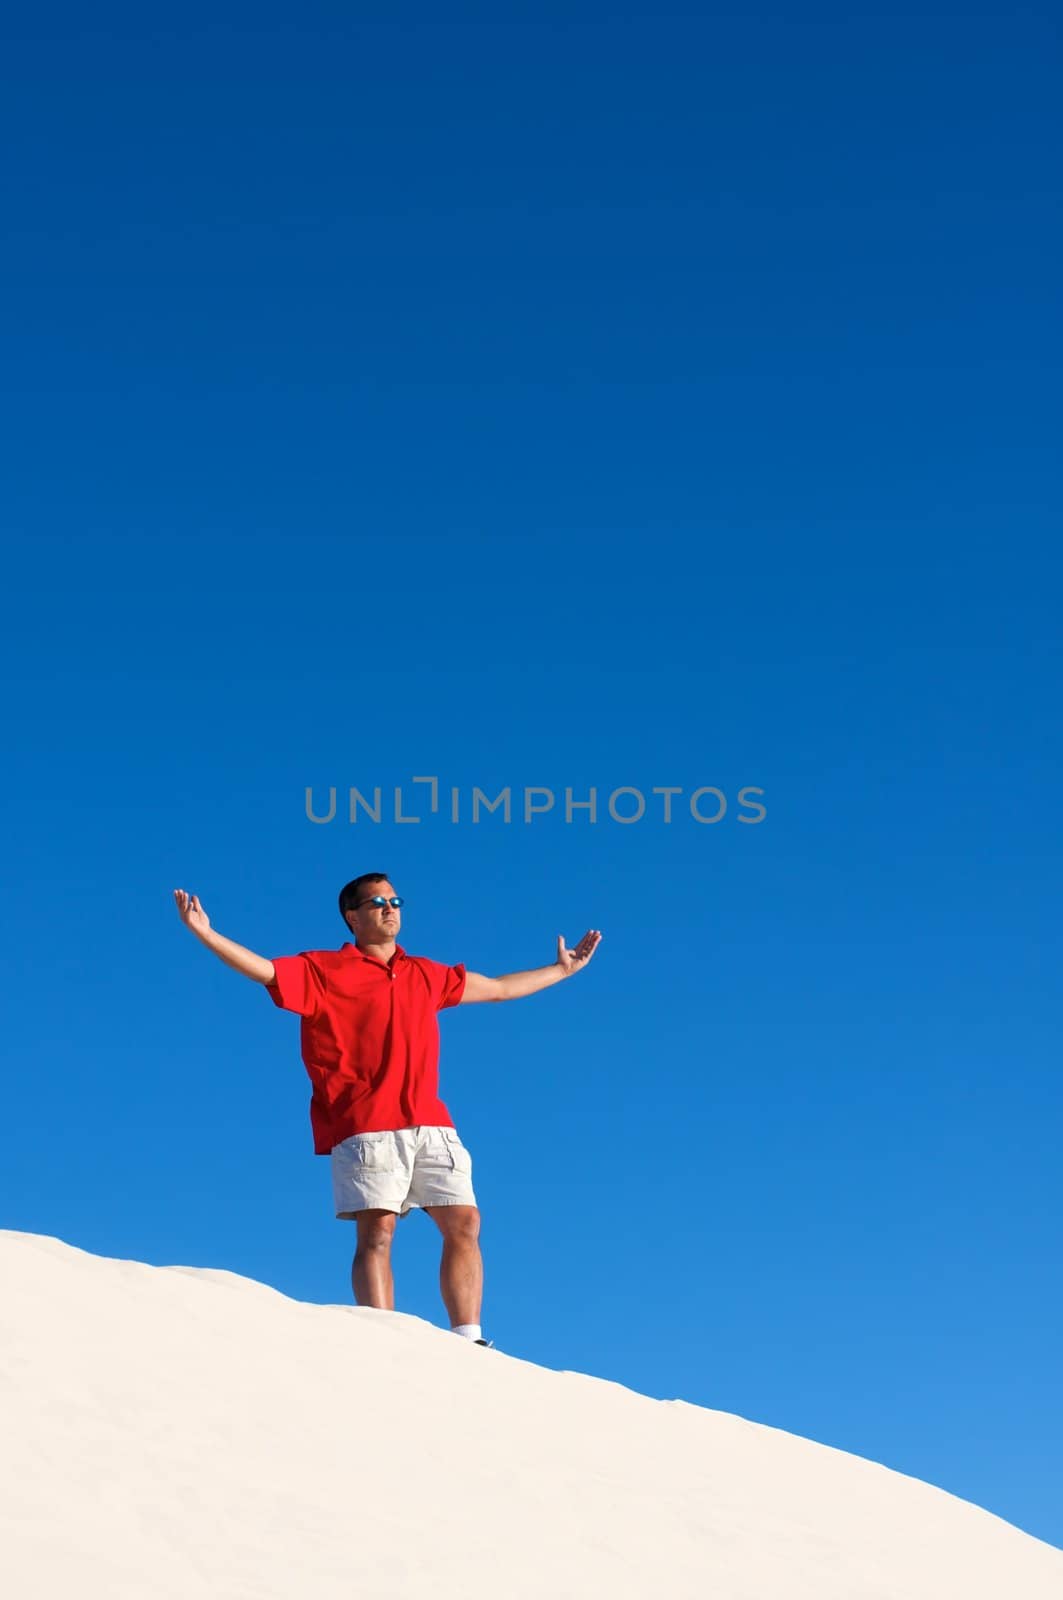 An image of a man atop a sand dune